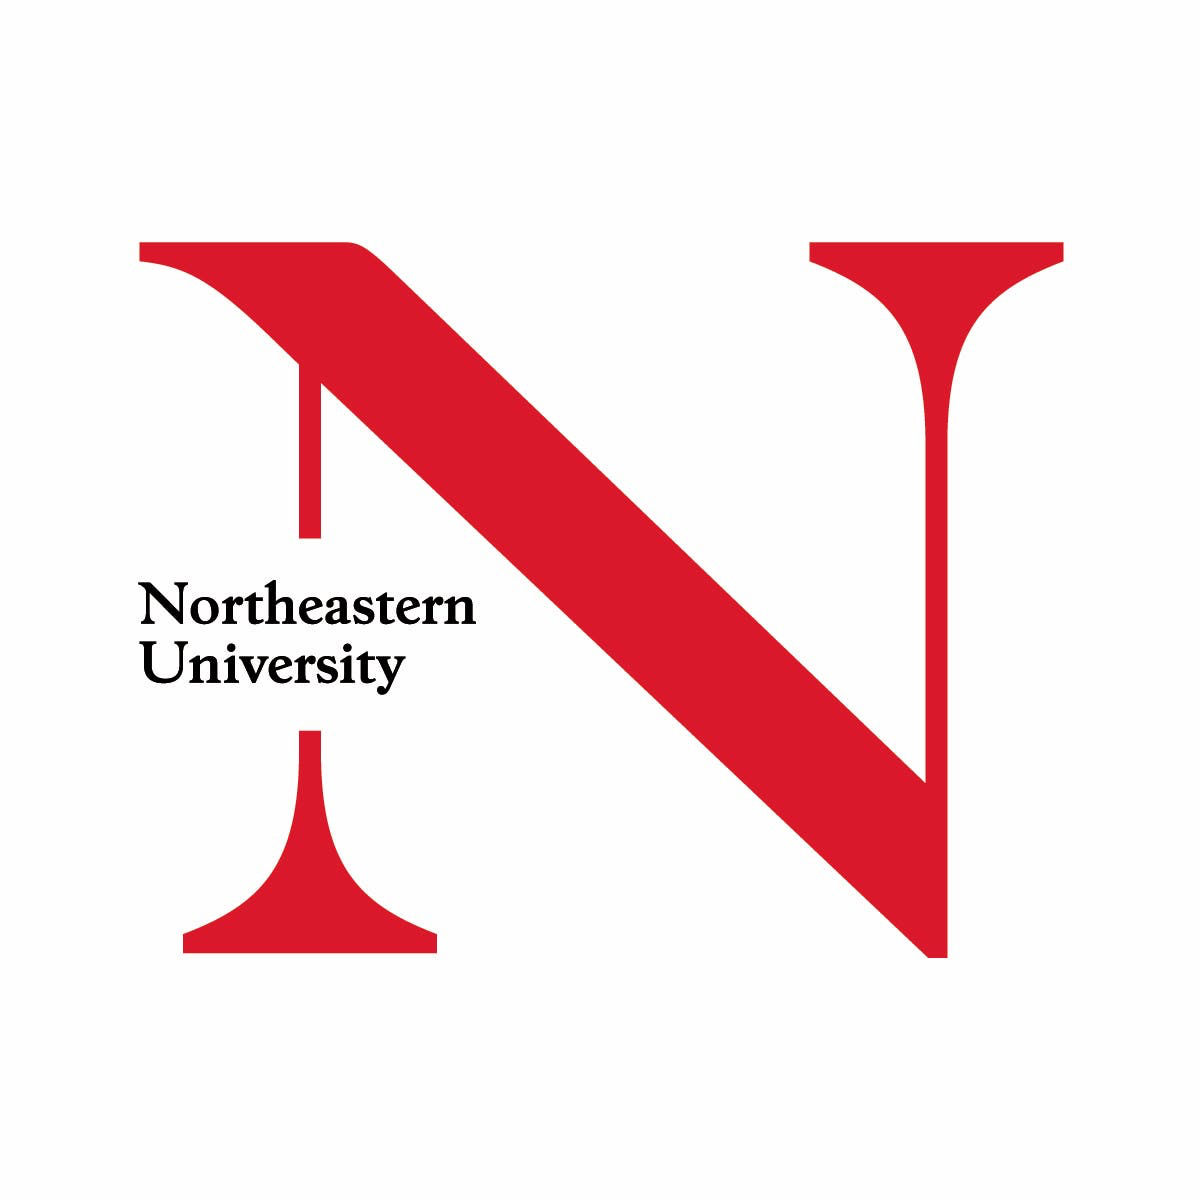 northeastern-university